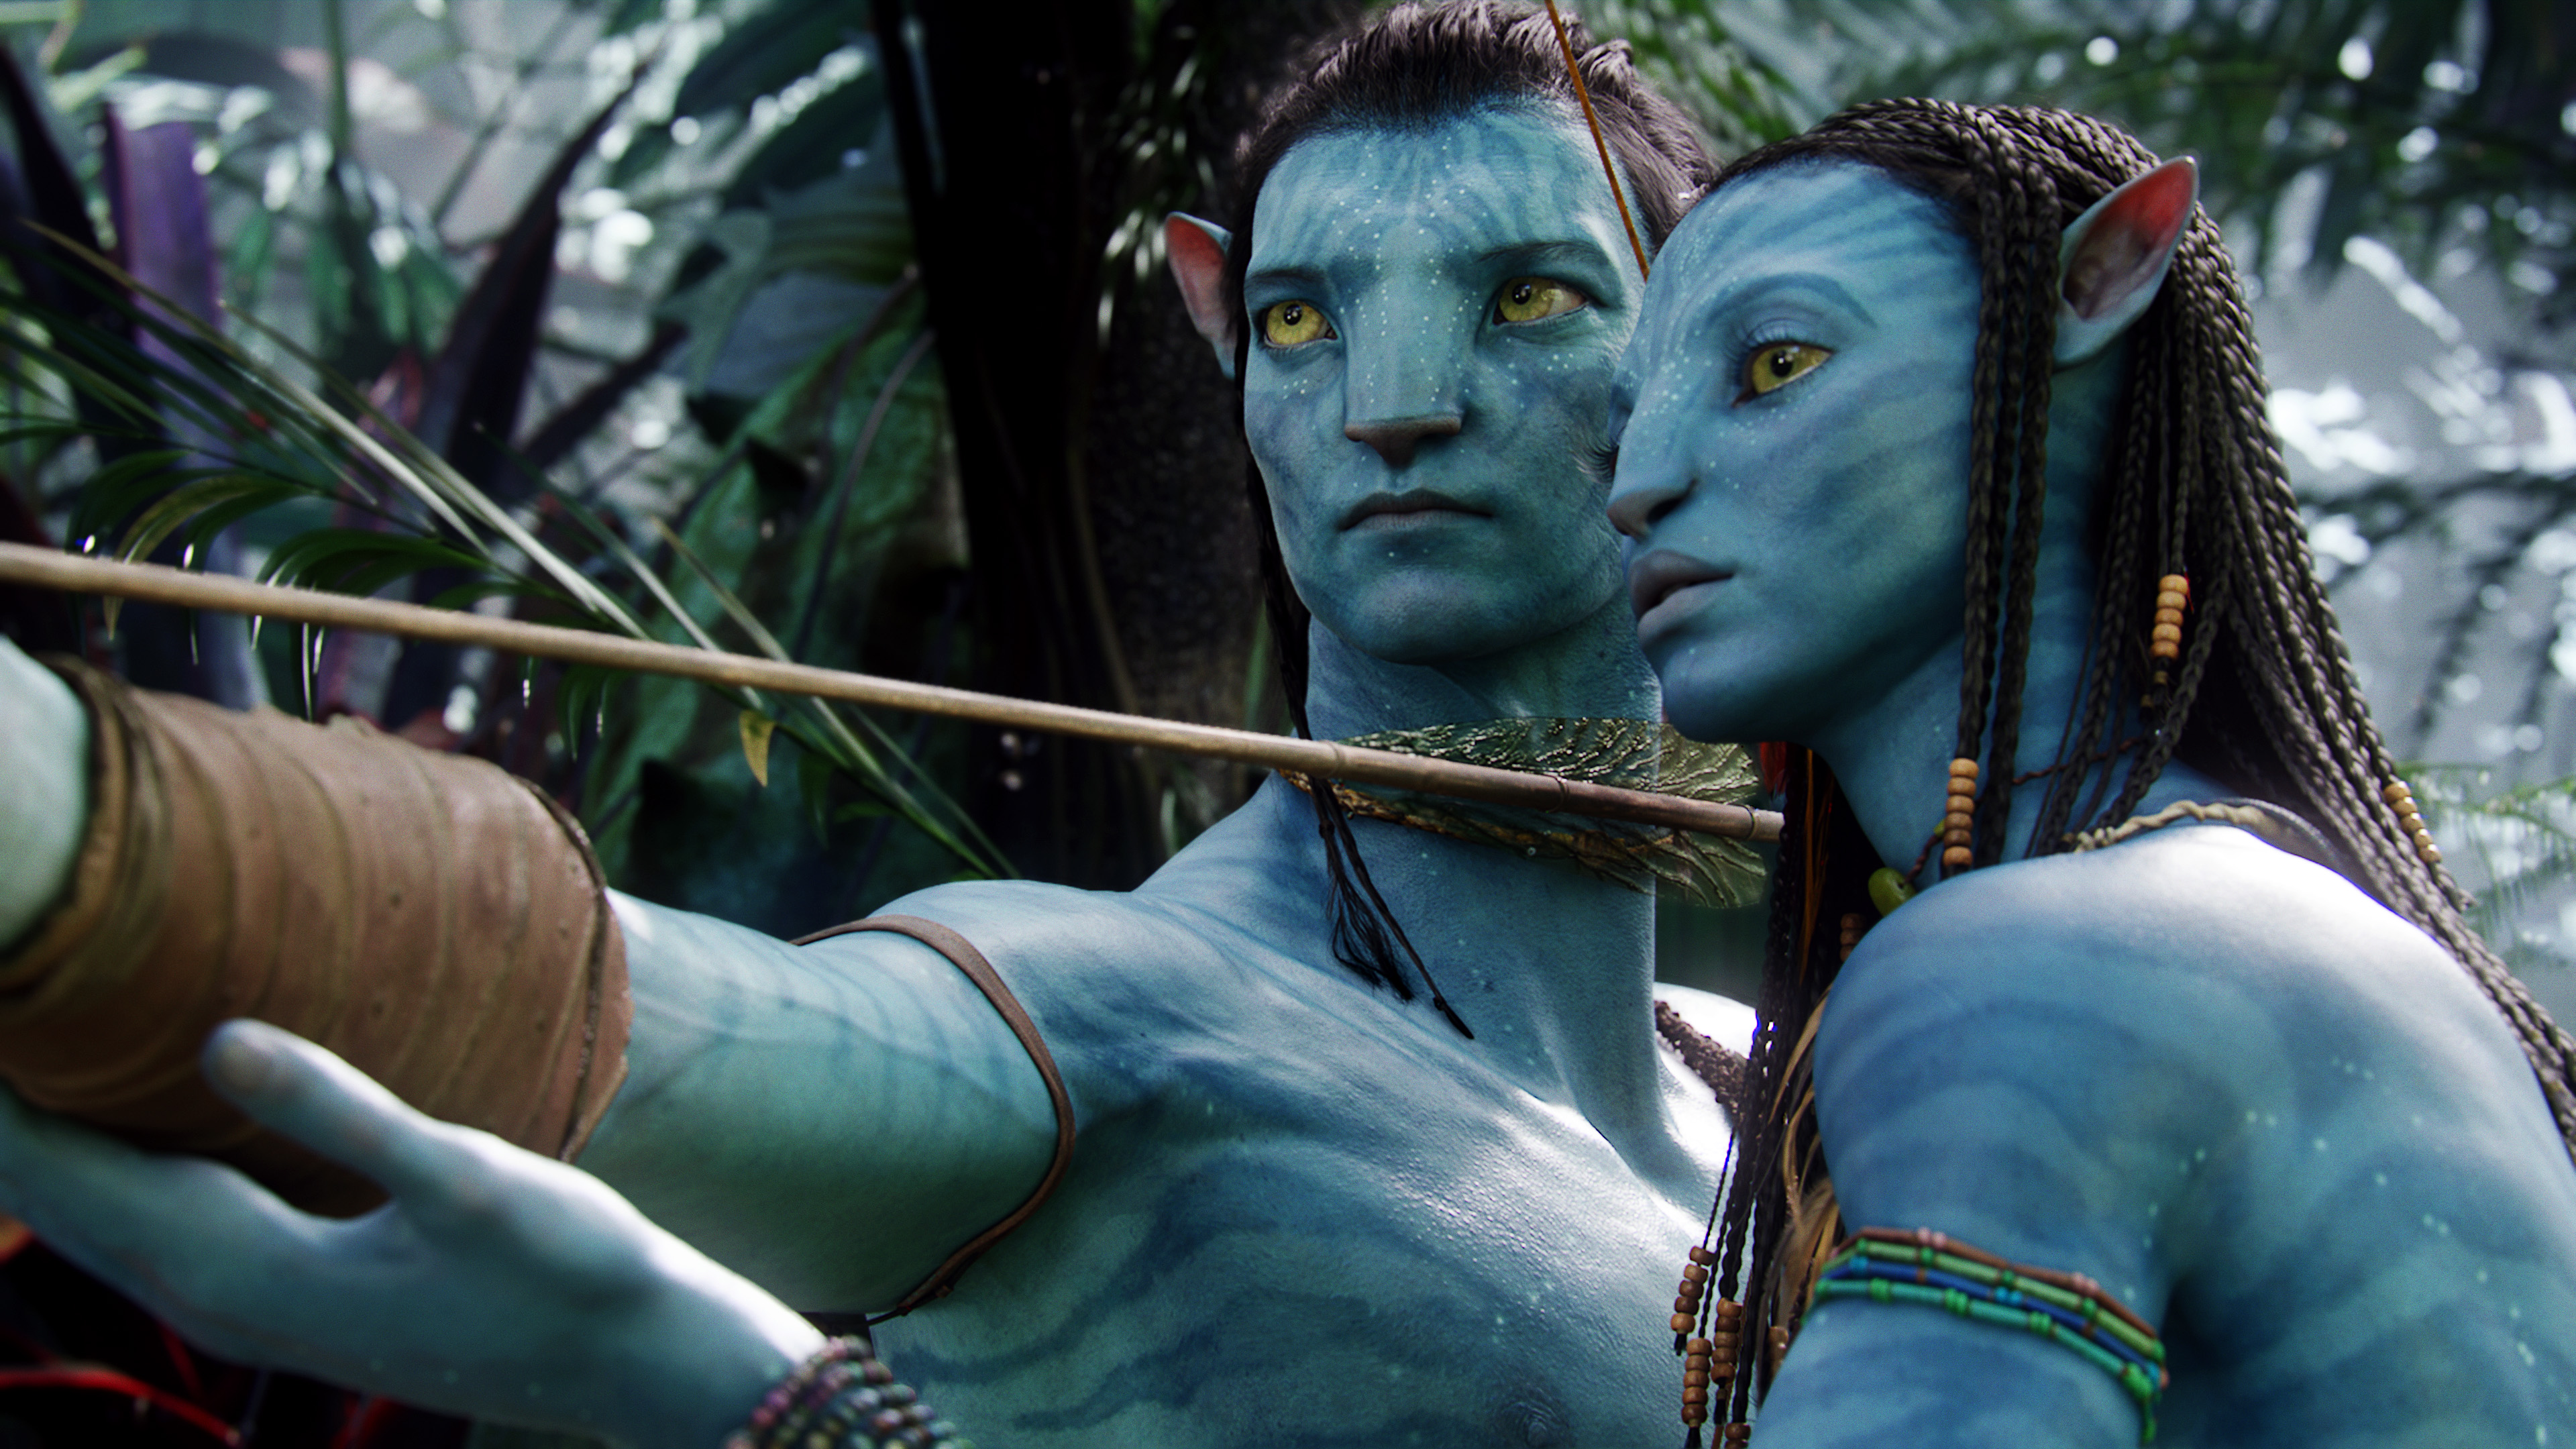 Avatar 2 - Từ khi công bố vào năm 2010, Avatar đã trở thành một trong những bộ phim 3D được mong đợi nhất của thế giới. Và giờ đây, vào năm 2024, Avatar 2 đã chính thức phát hành! Với kỹ thuật số hoàn hảo và cốt truyện ly kỳ, bộ phim này hứa hẹn sẽ đem đến cho người xem những trải nghiệm tuyệt vời và những thế giới kỳ diệu cùng với những nhân vật đầy sức mạnh và hi vọng. Đừng bỏ lỡ cơ hội để chiêm ngưỡng thế giới đầy màu sắc và kỳ lạ của Avatar 2!